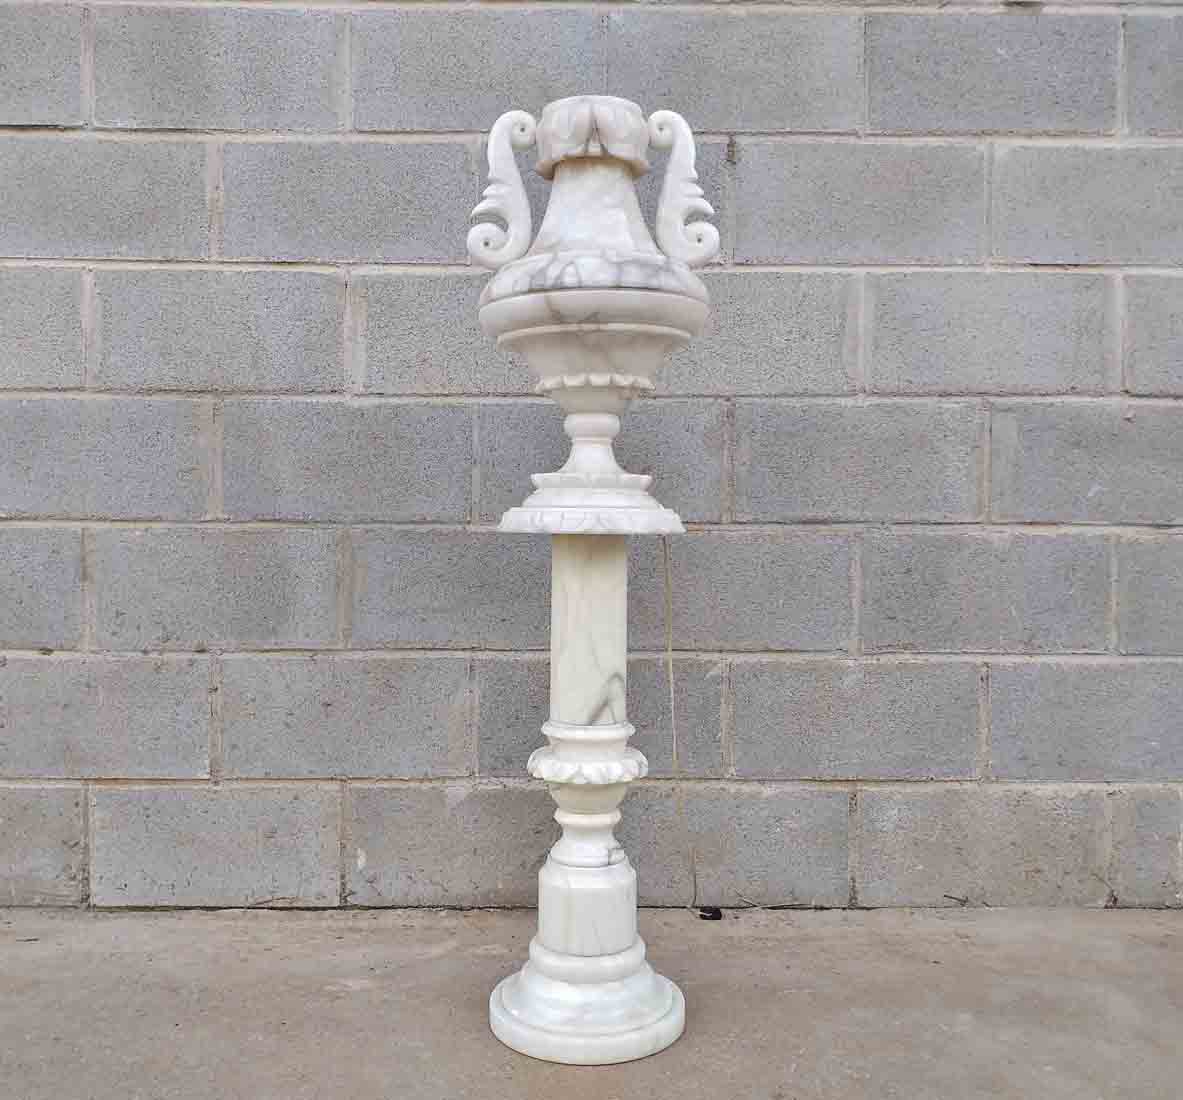 Imitación de la antigua Columna romana antigua de estilo griego crudo Columna  decorativa Pedestal de boda 75 cm de alto -  España